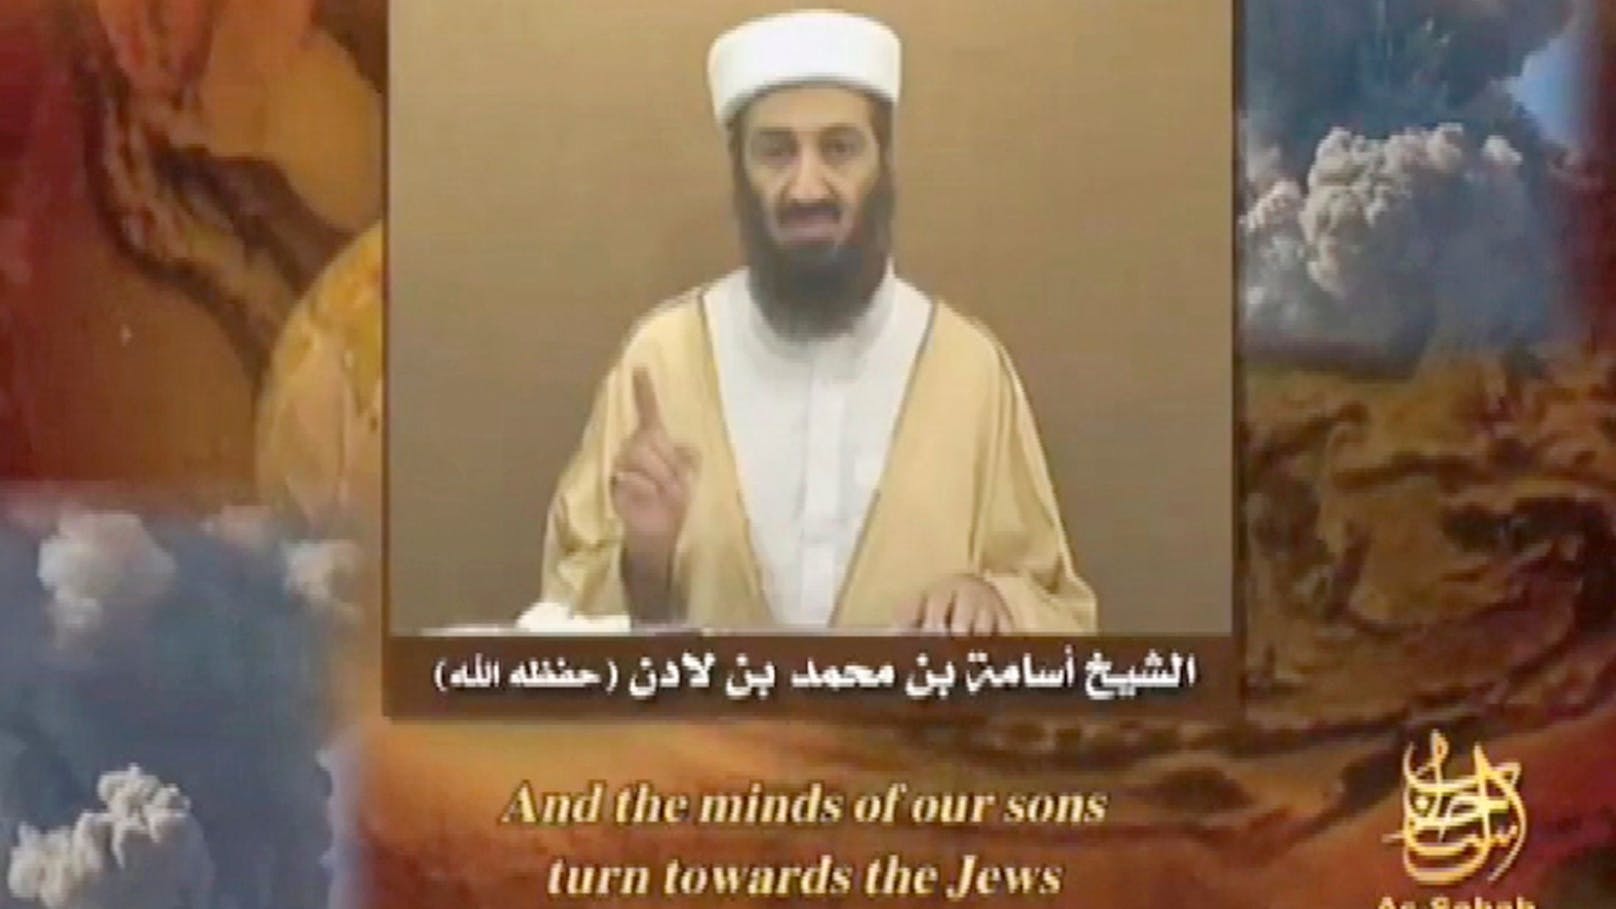 Warum auf Tiktok Osama Bin Laden jetzt "ein Guter" ist